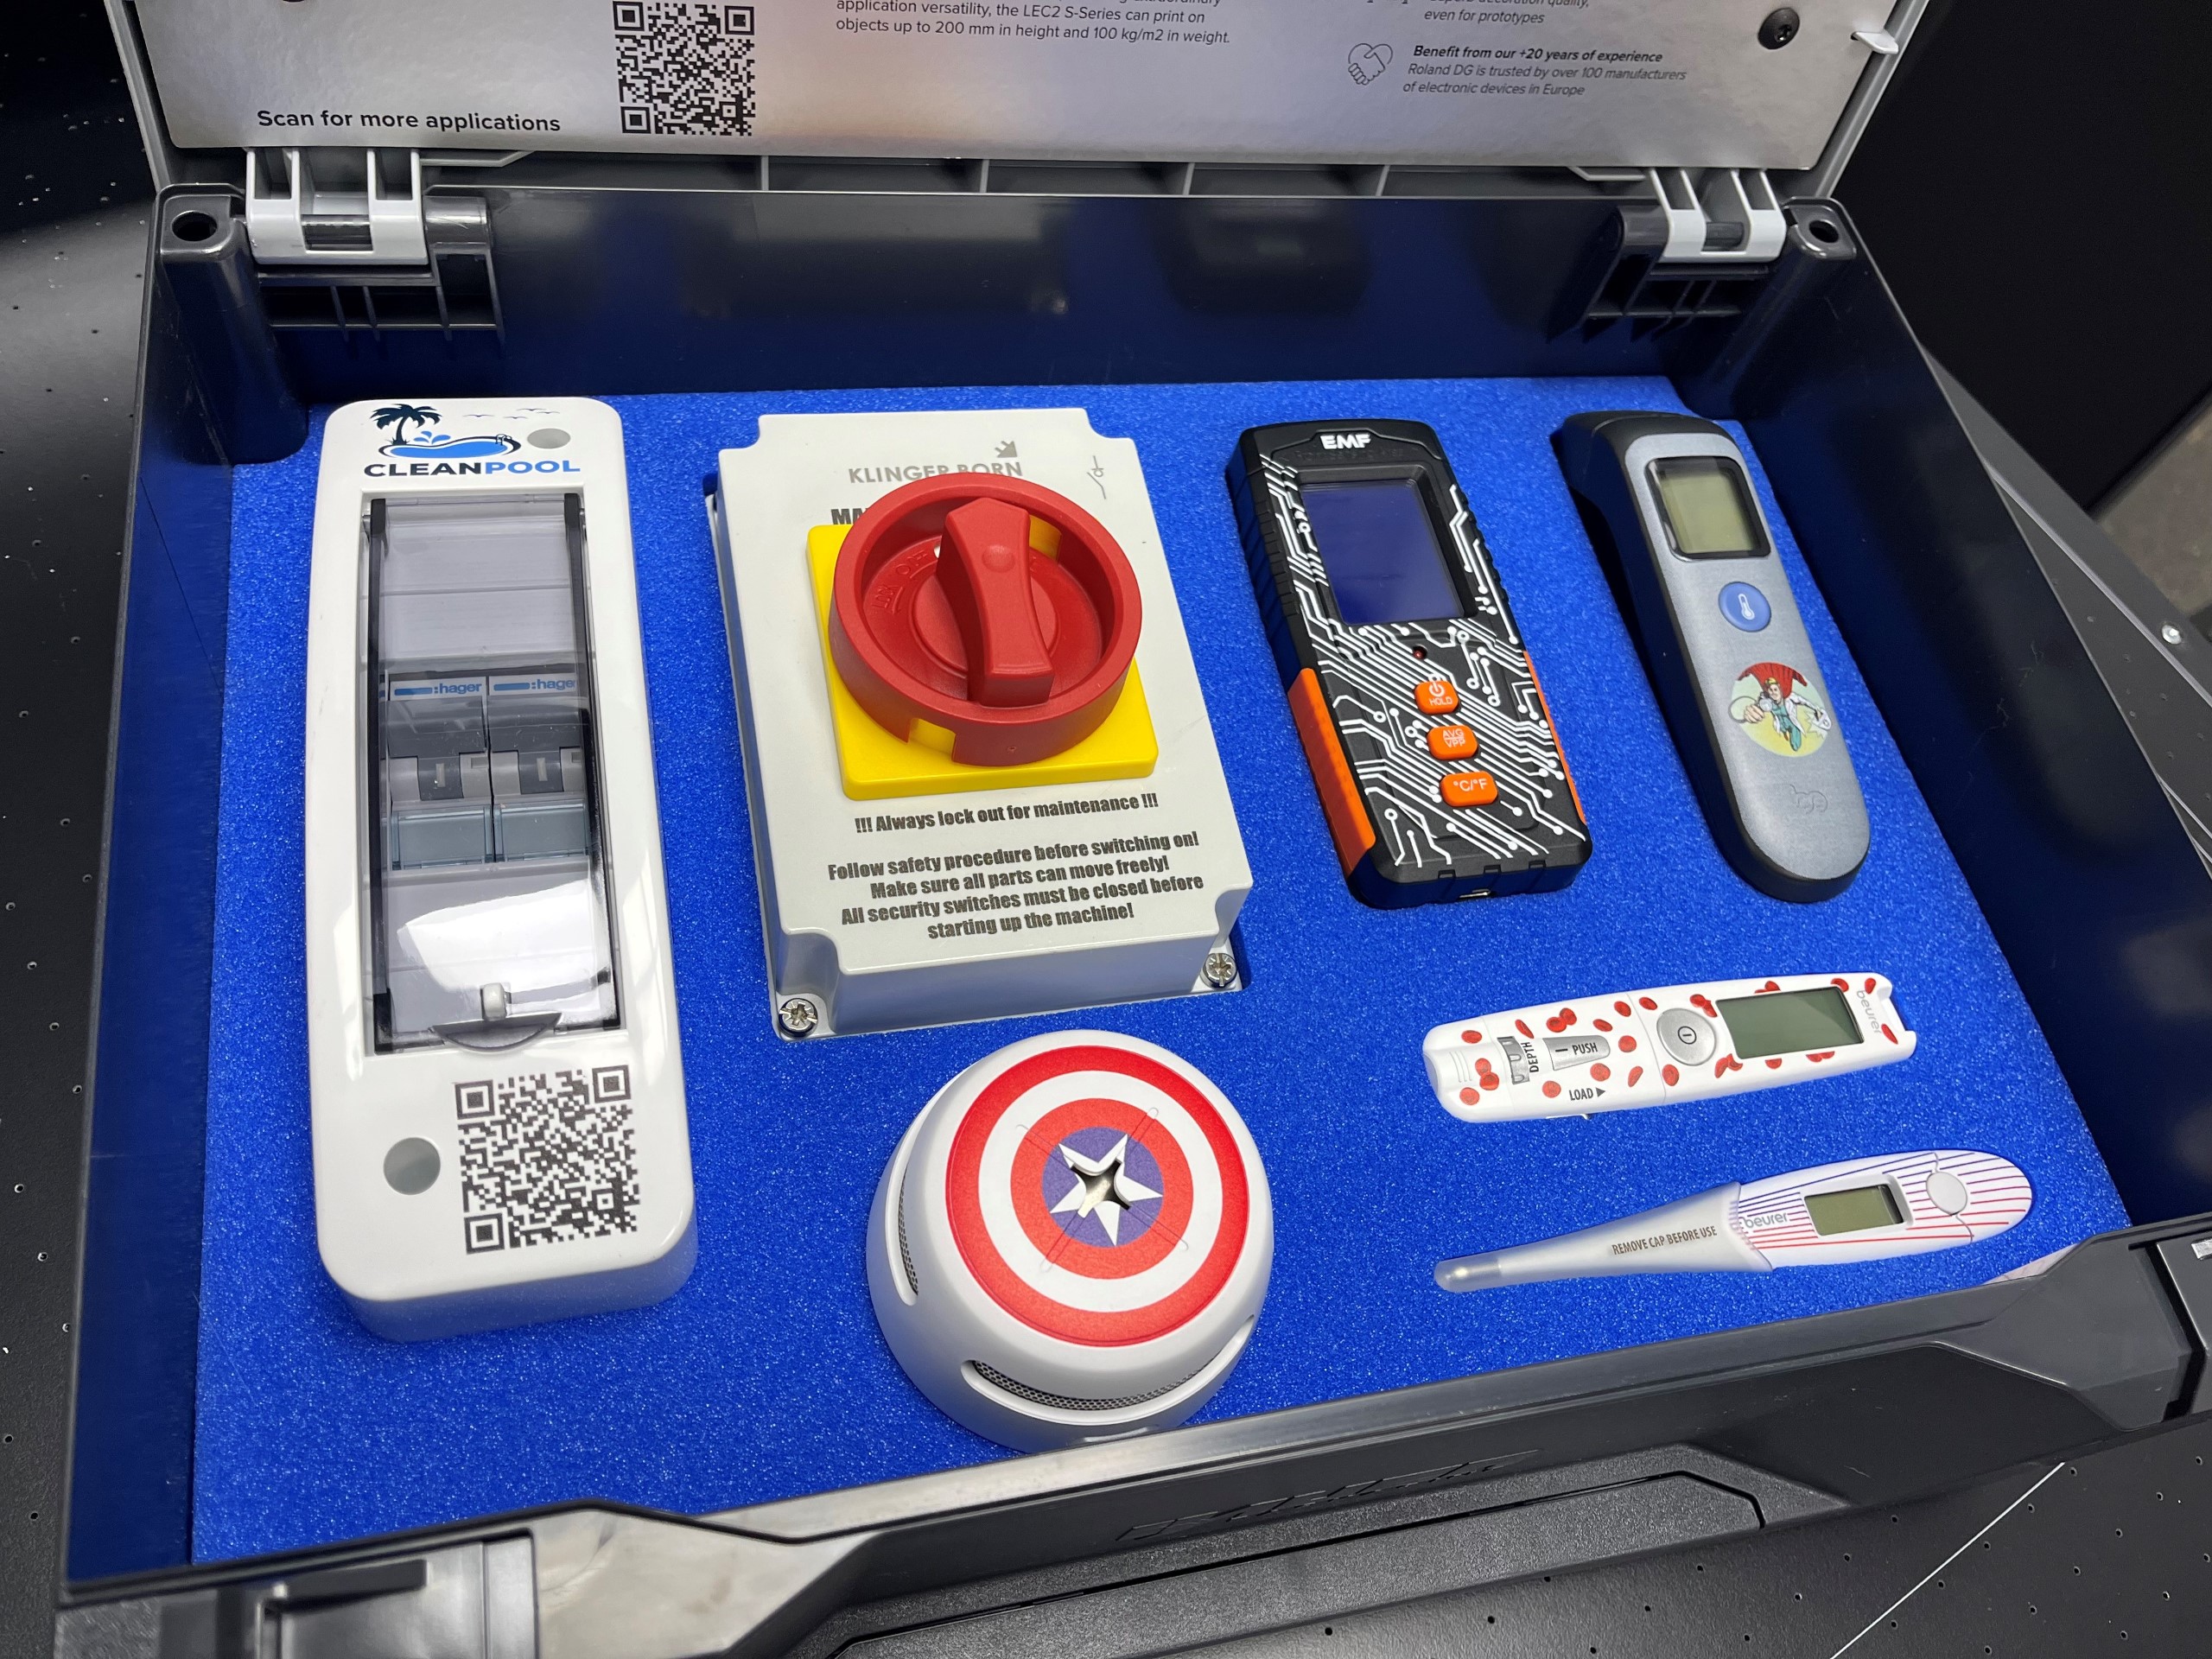 Un maletín con componentes electrónicos personalizados